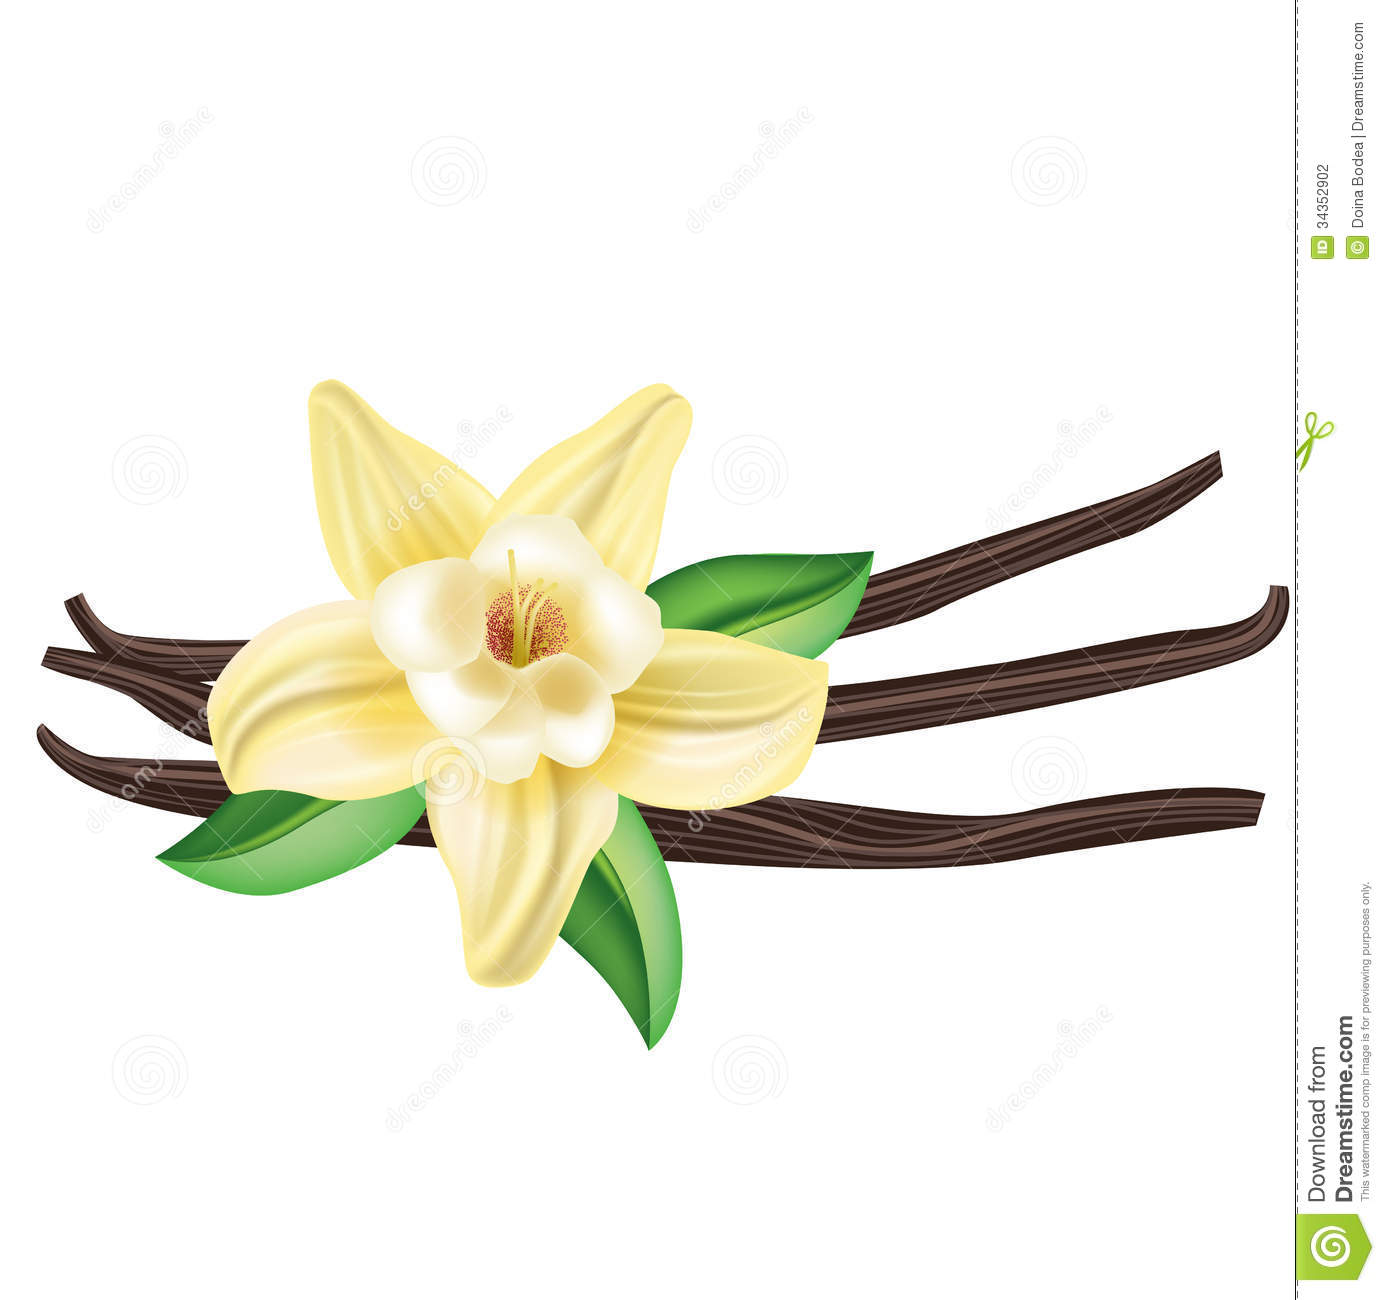 Vanilla Clipart  Vanilla Flower Drawing  Vanilla Bean Flower